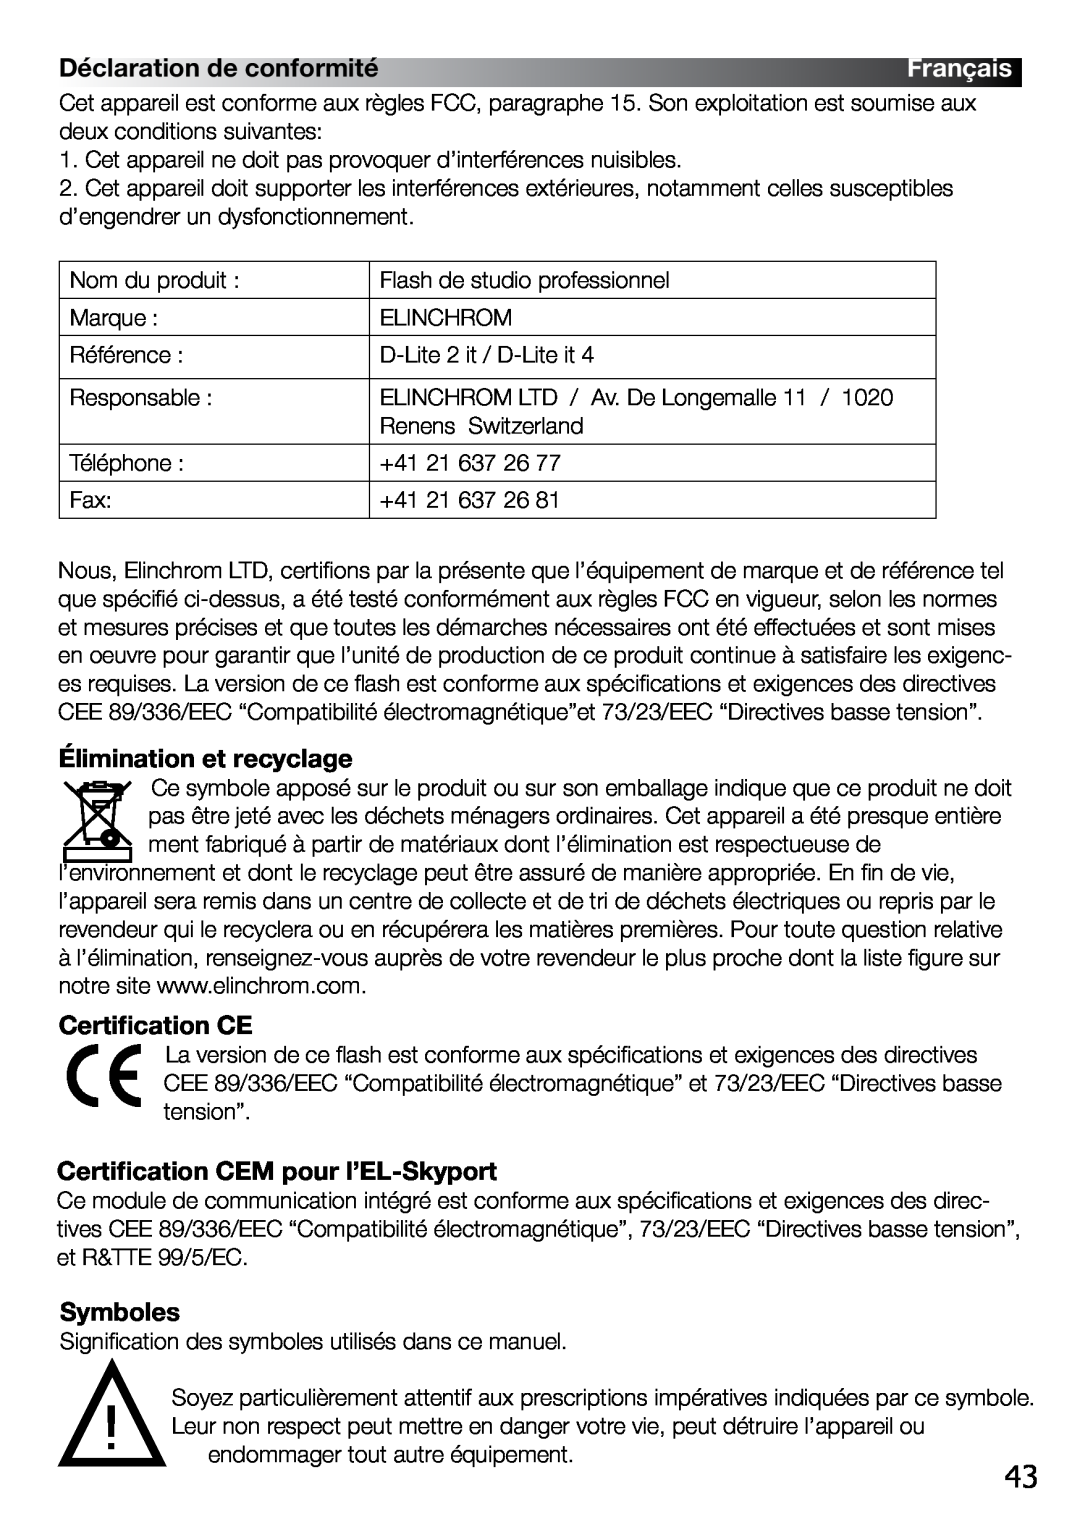 Elinchrom 2 IT Déclaration de conformité, Élimination et recyclage, Certification CE­, Certification CEM pour l’EL-Skyport 